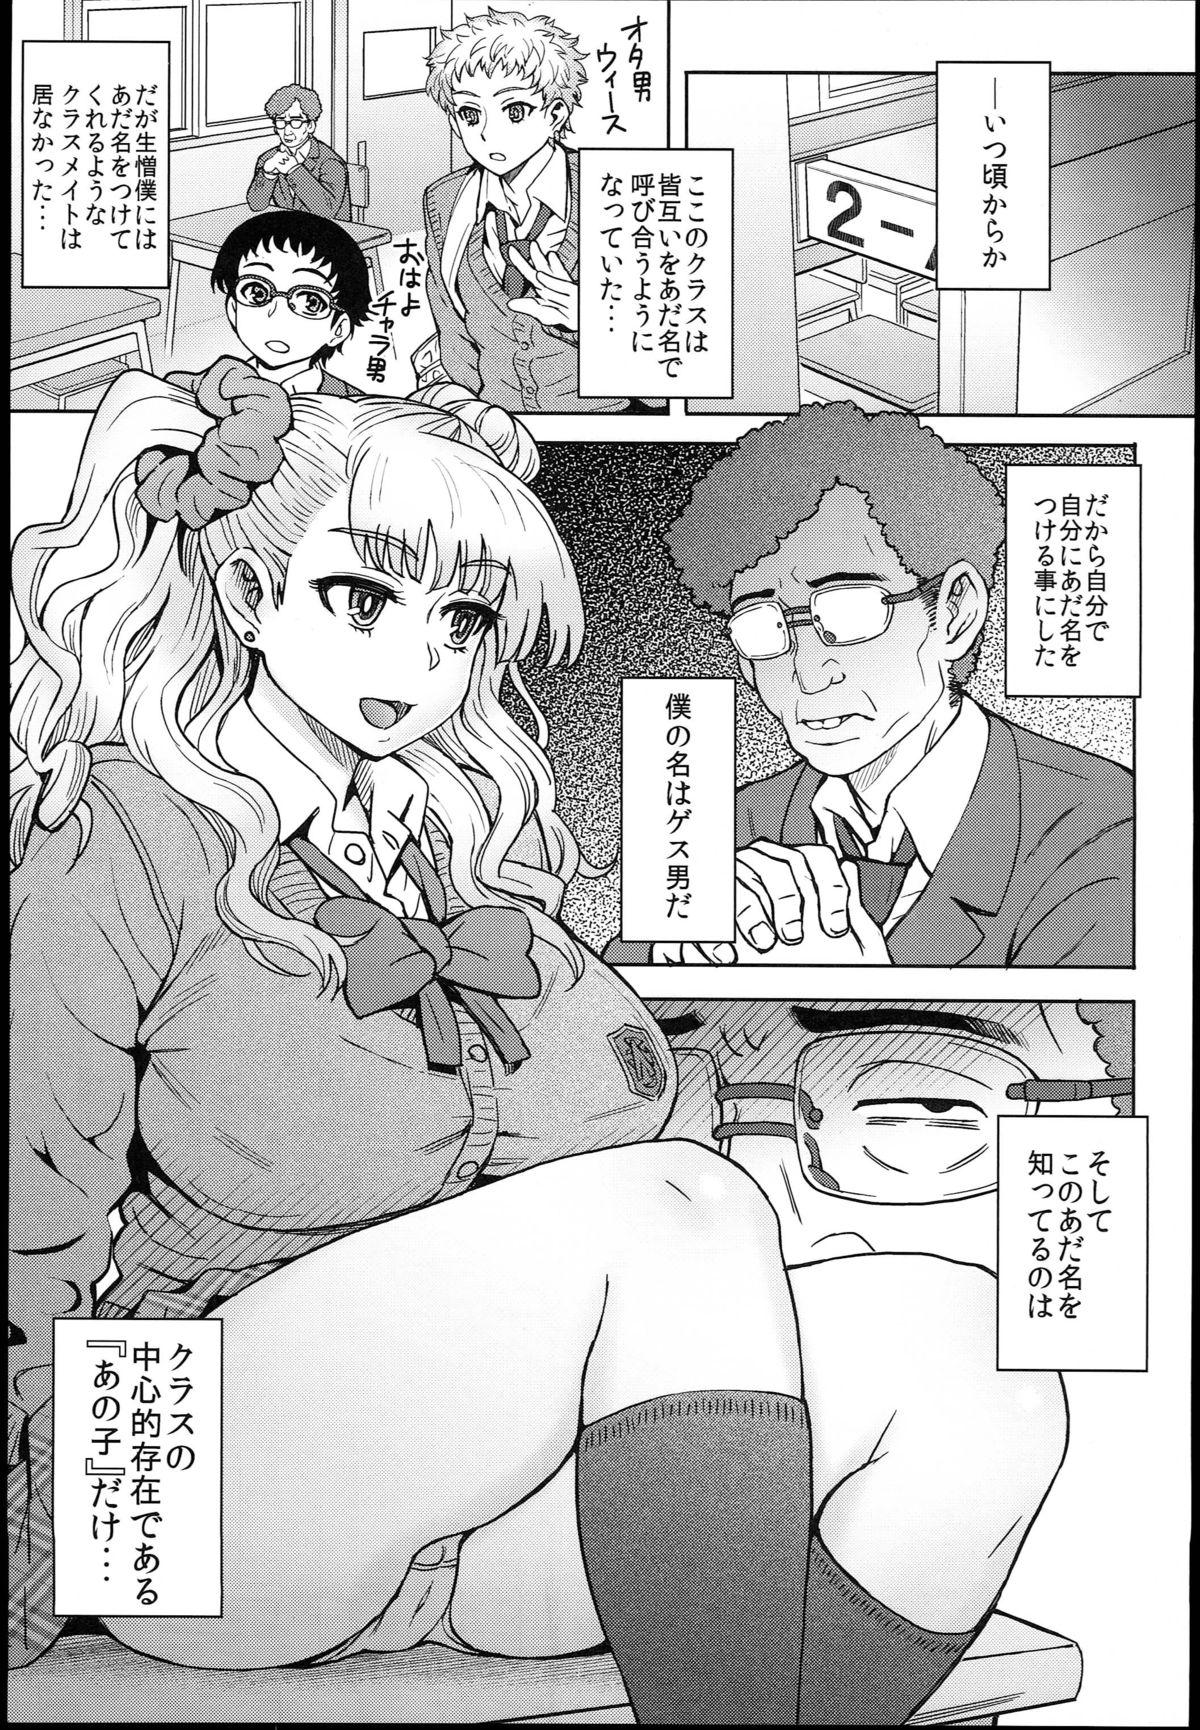 Jockstrap Oshierarenai!? Galko-chan - Oshiete galko-chan Sexy Girl Sex - Page 3